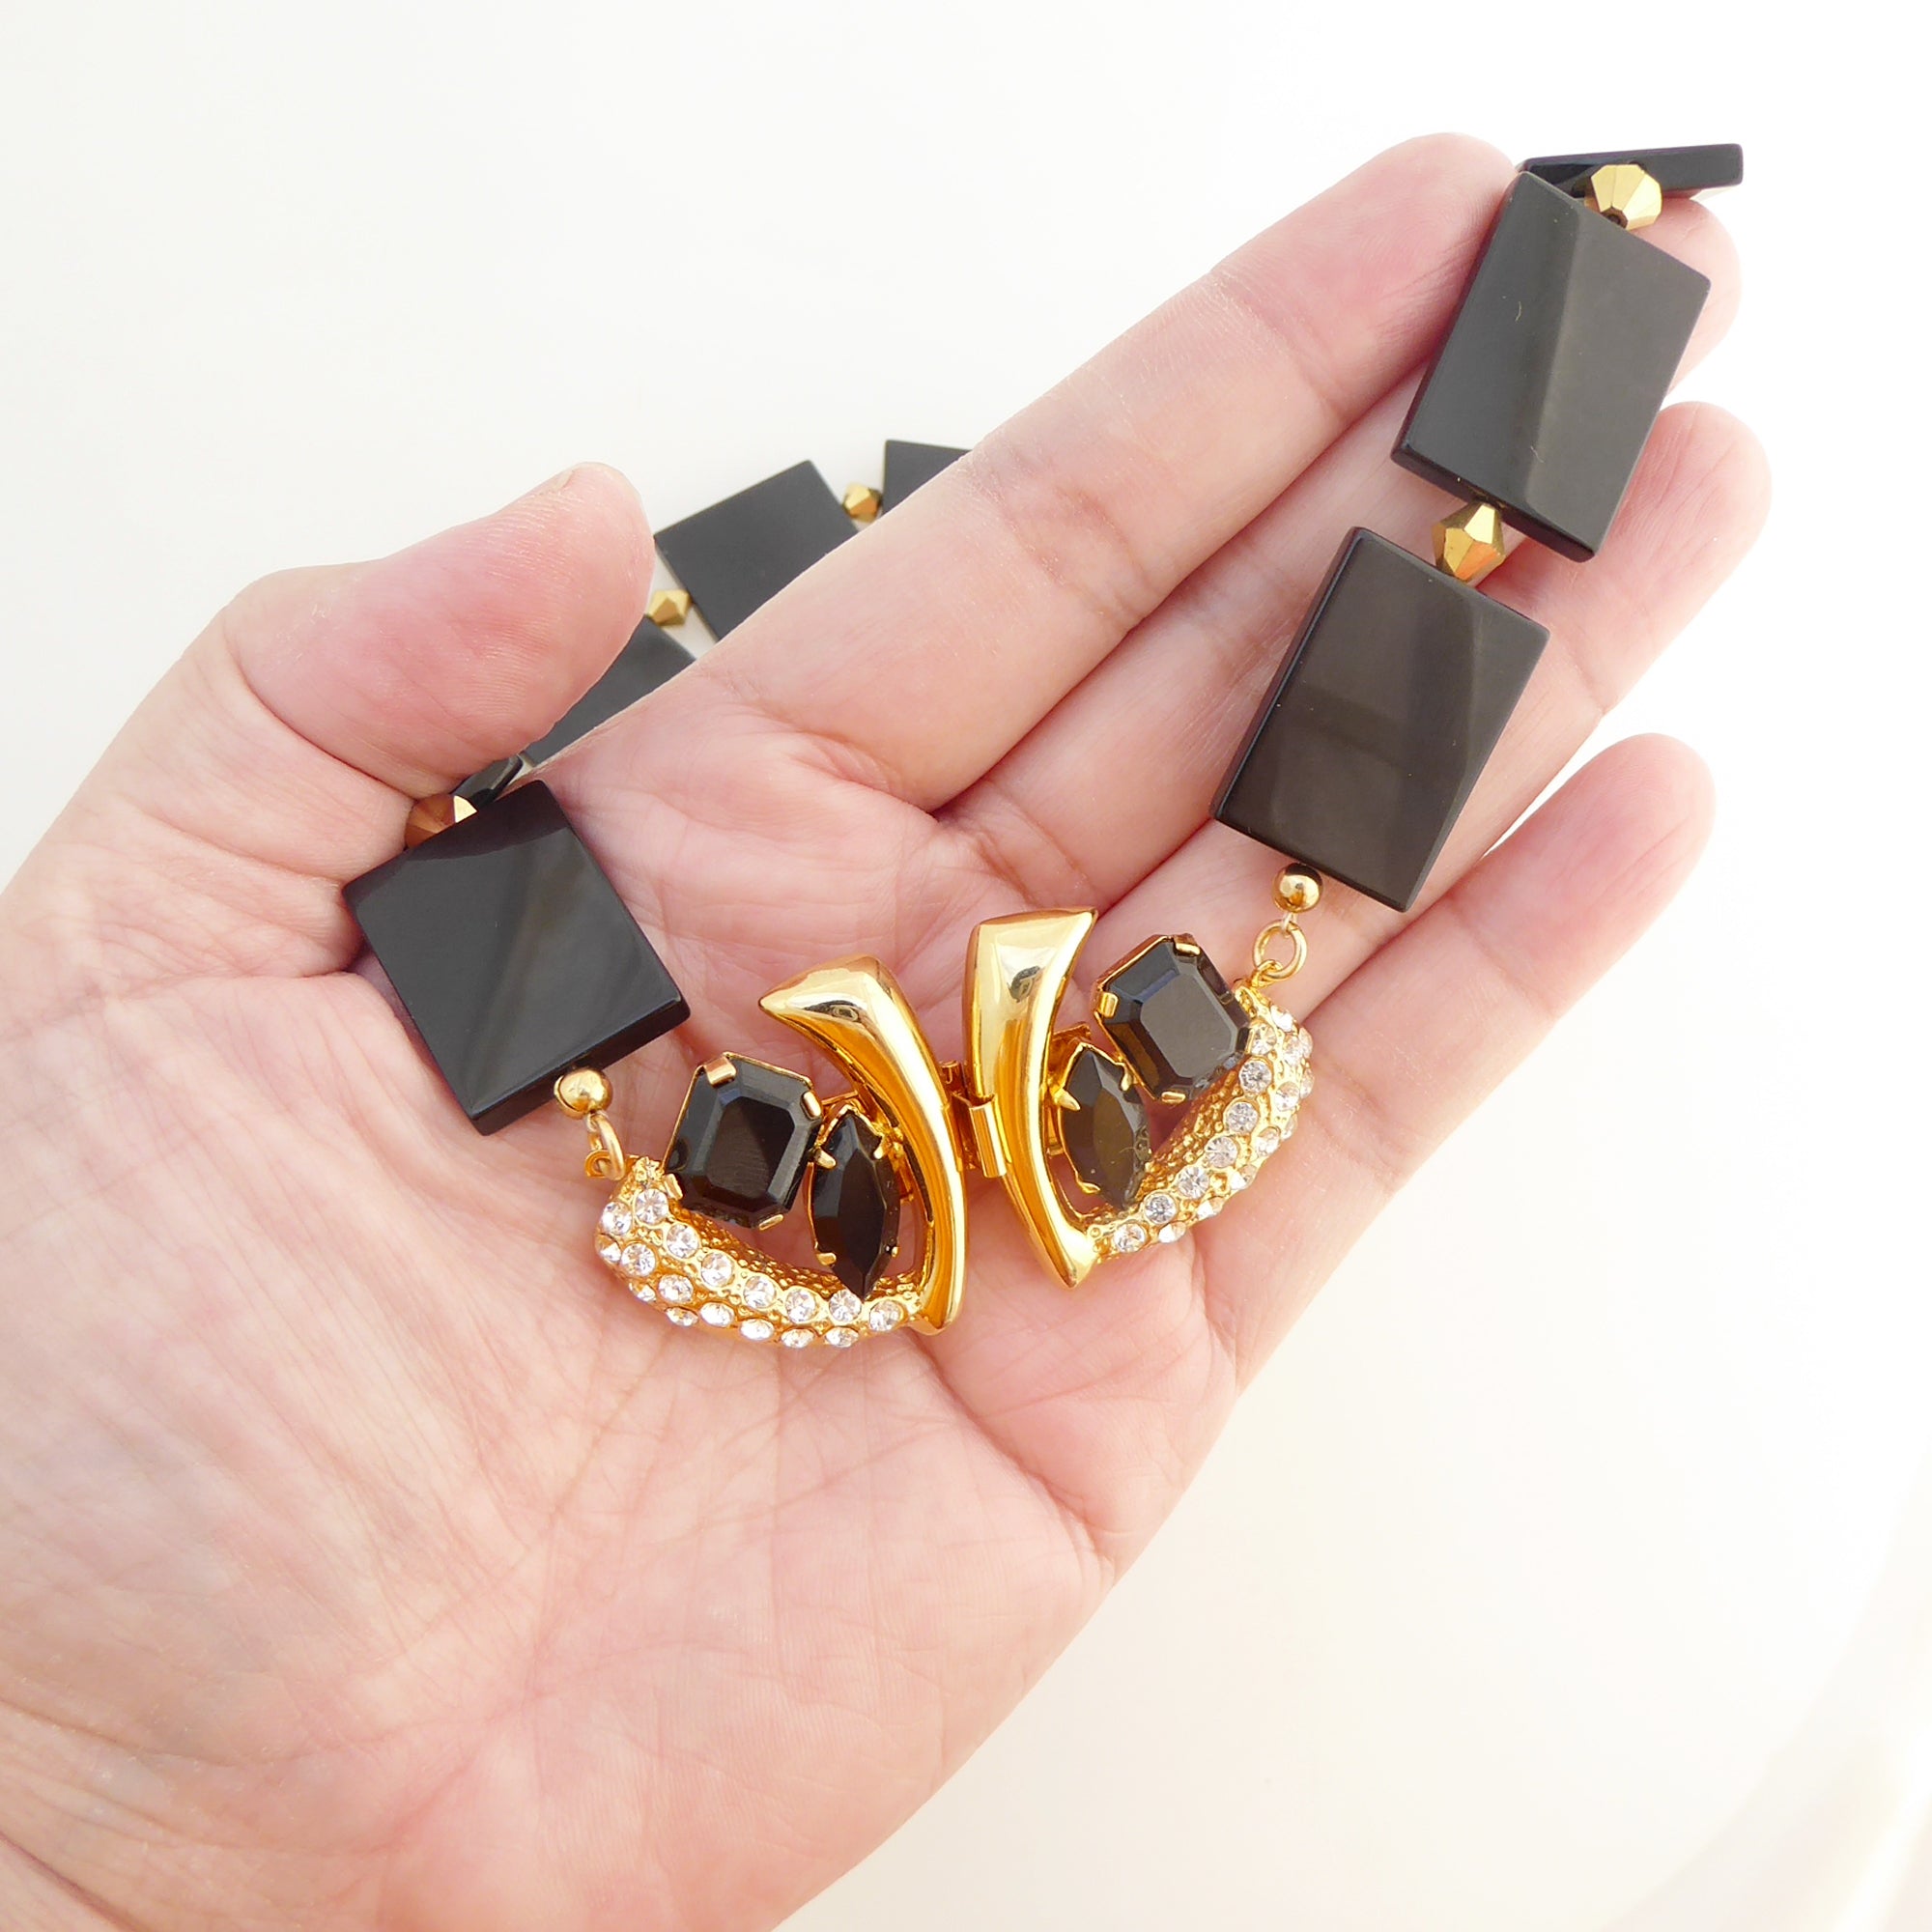 Black onyx golden collar necklace by Jenny Dayco 7